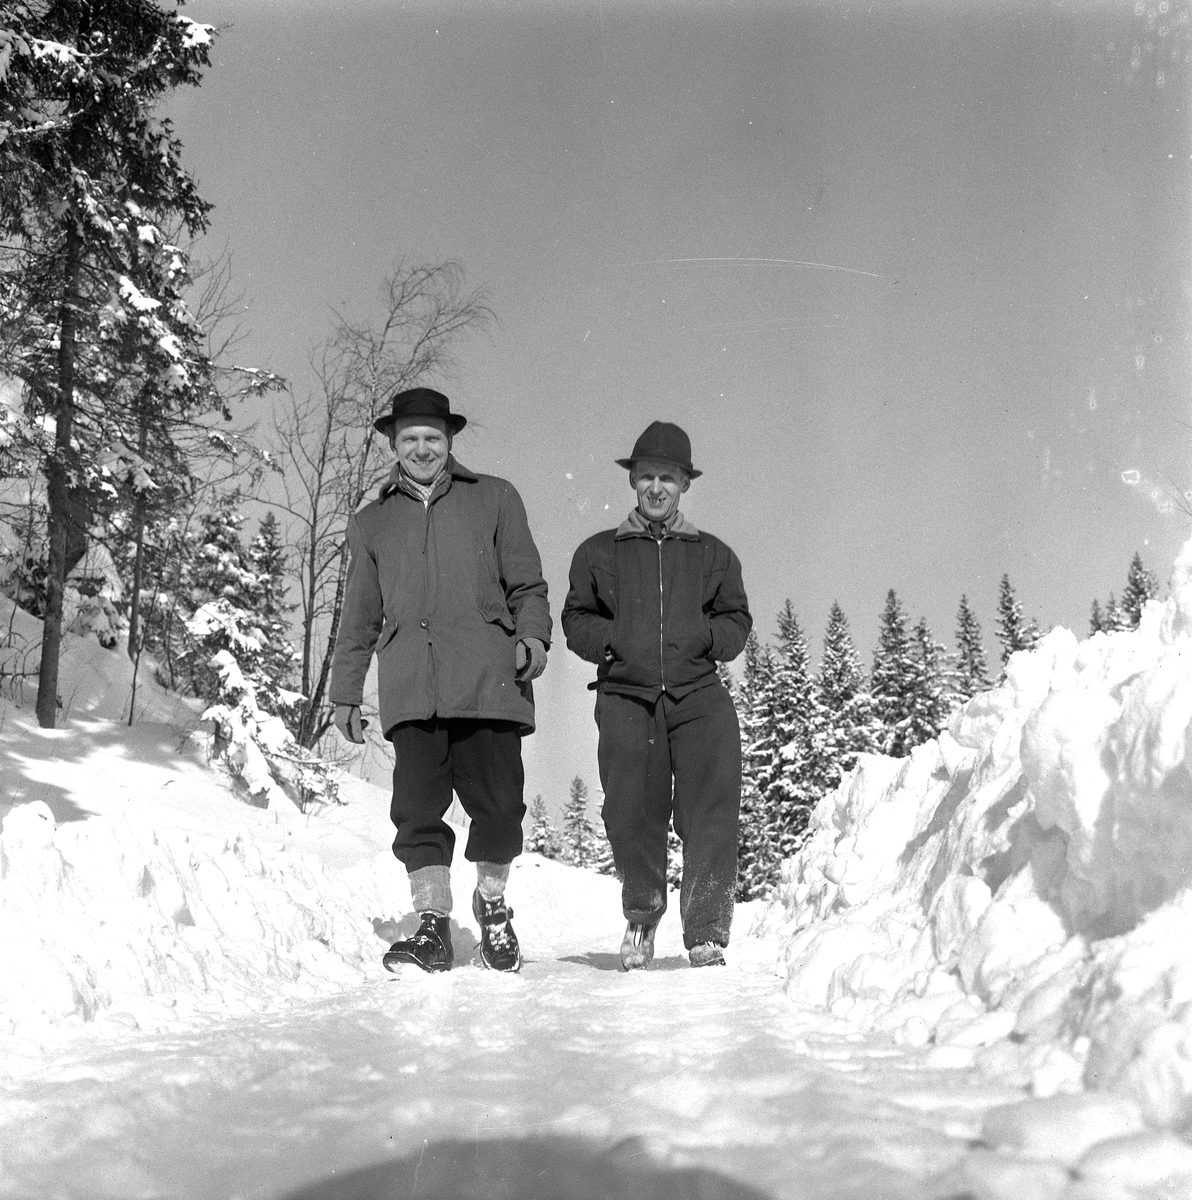 Skidlift i Ånnaboda.
19 Februari 1958.